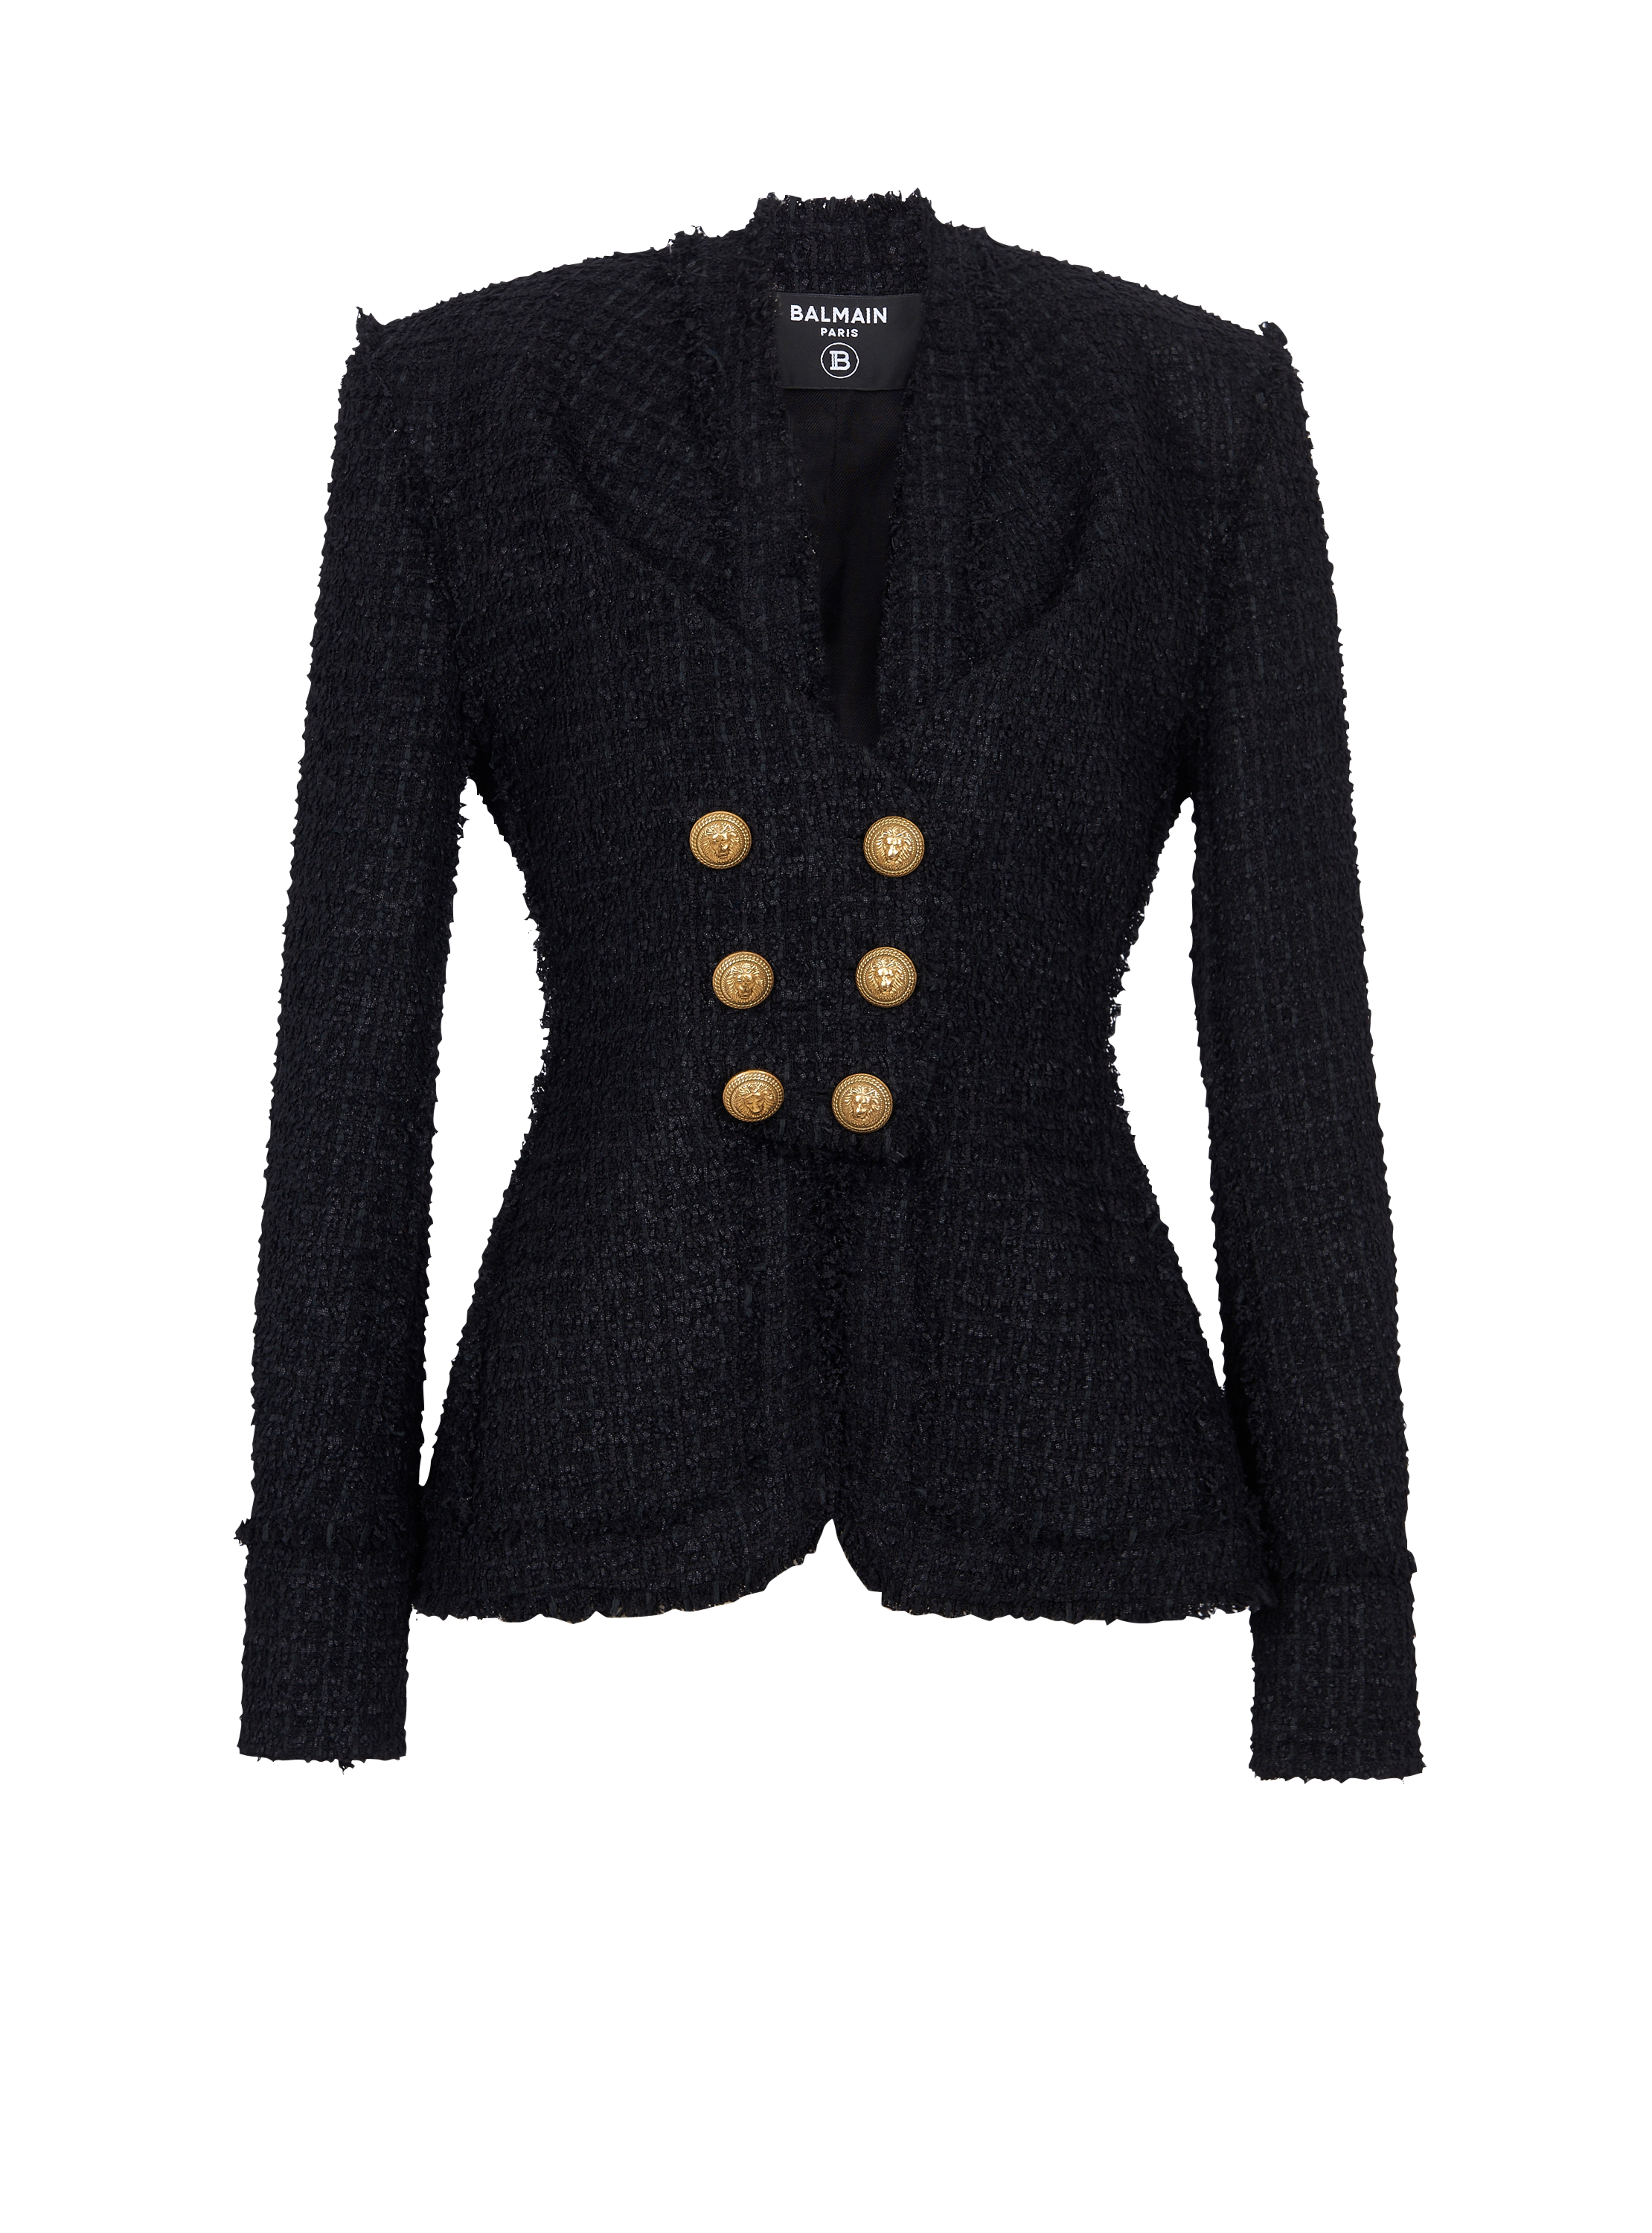 칼라리스 트위드 재킷, 검정색, hi-res